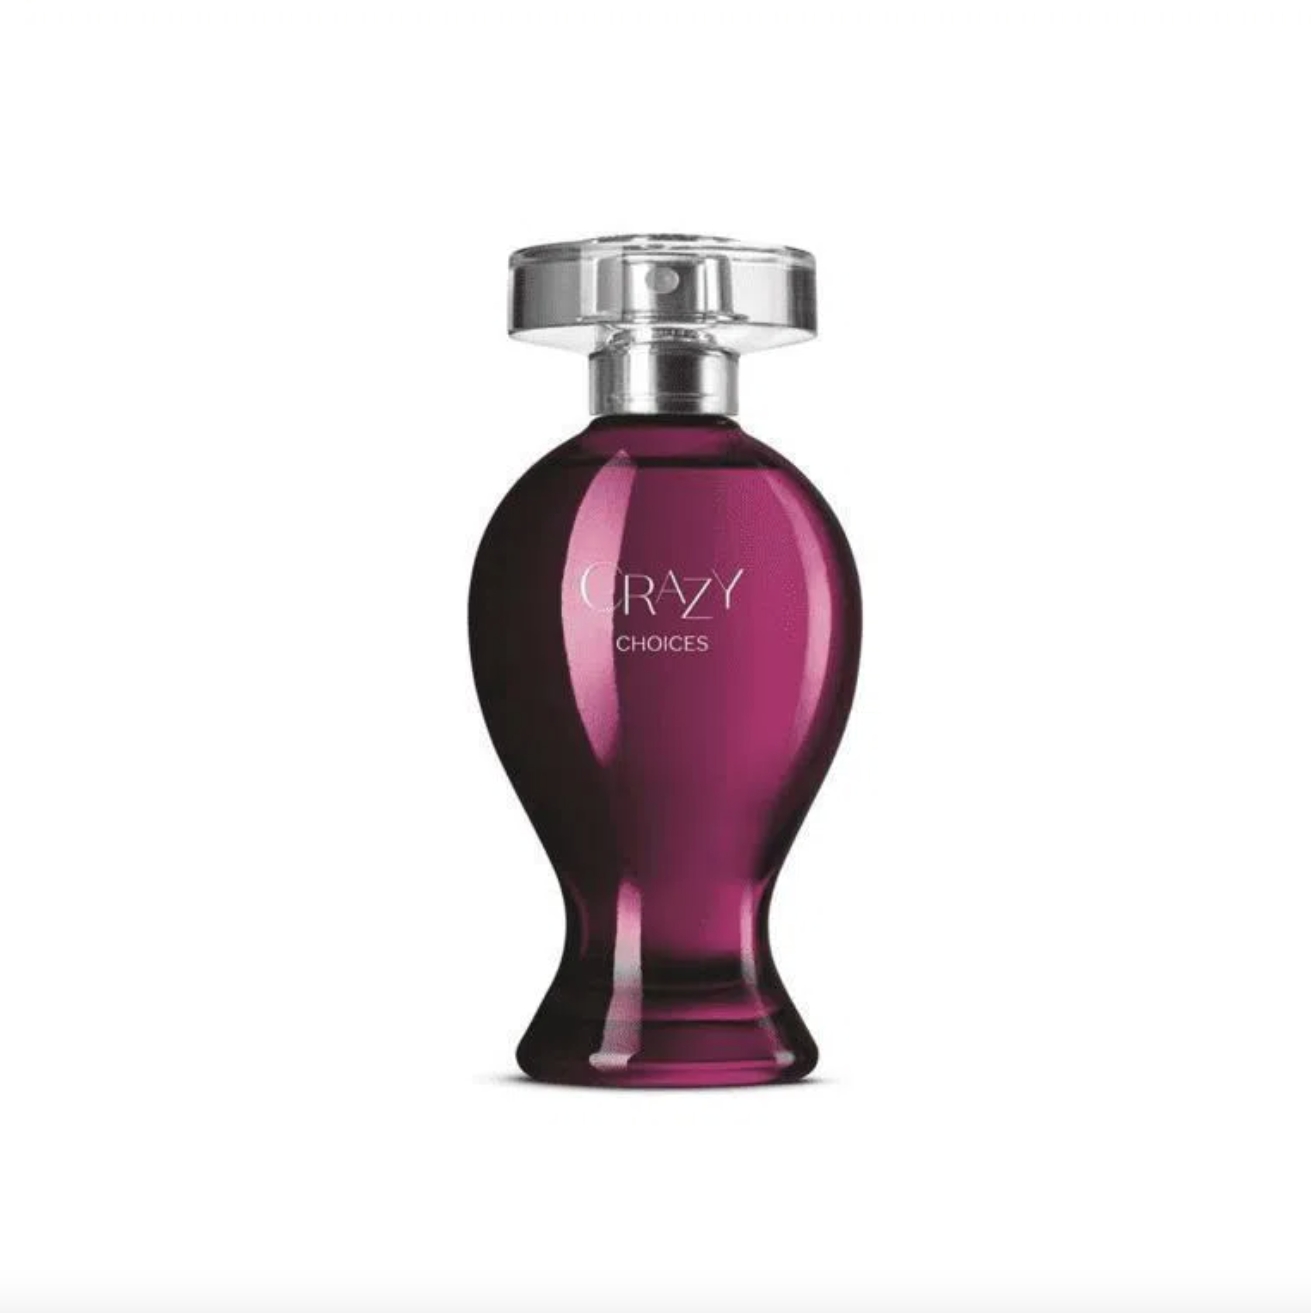 vidro de perfume na cor roxa com base mais fina e topo arredondado representando curvas femininas